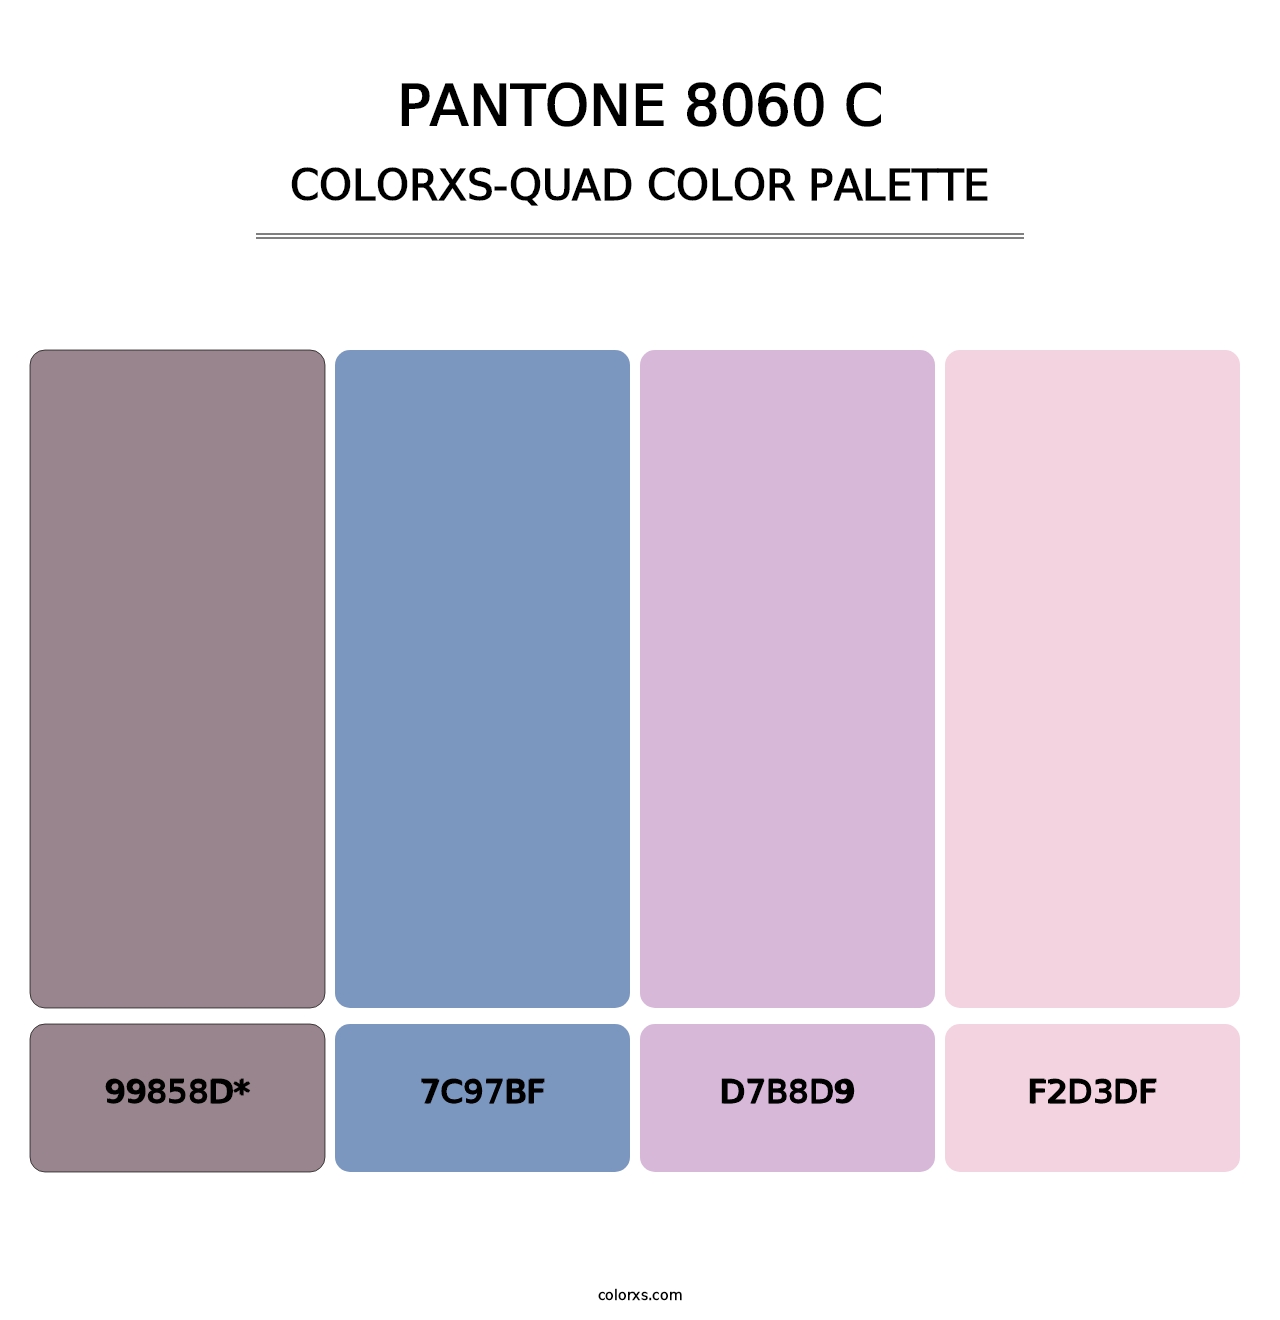 PANTONE 8060 C - Colorxs Quad Palette